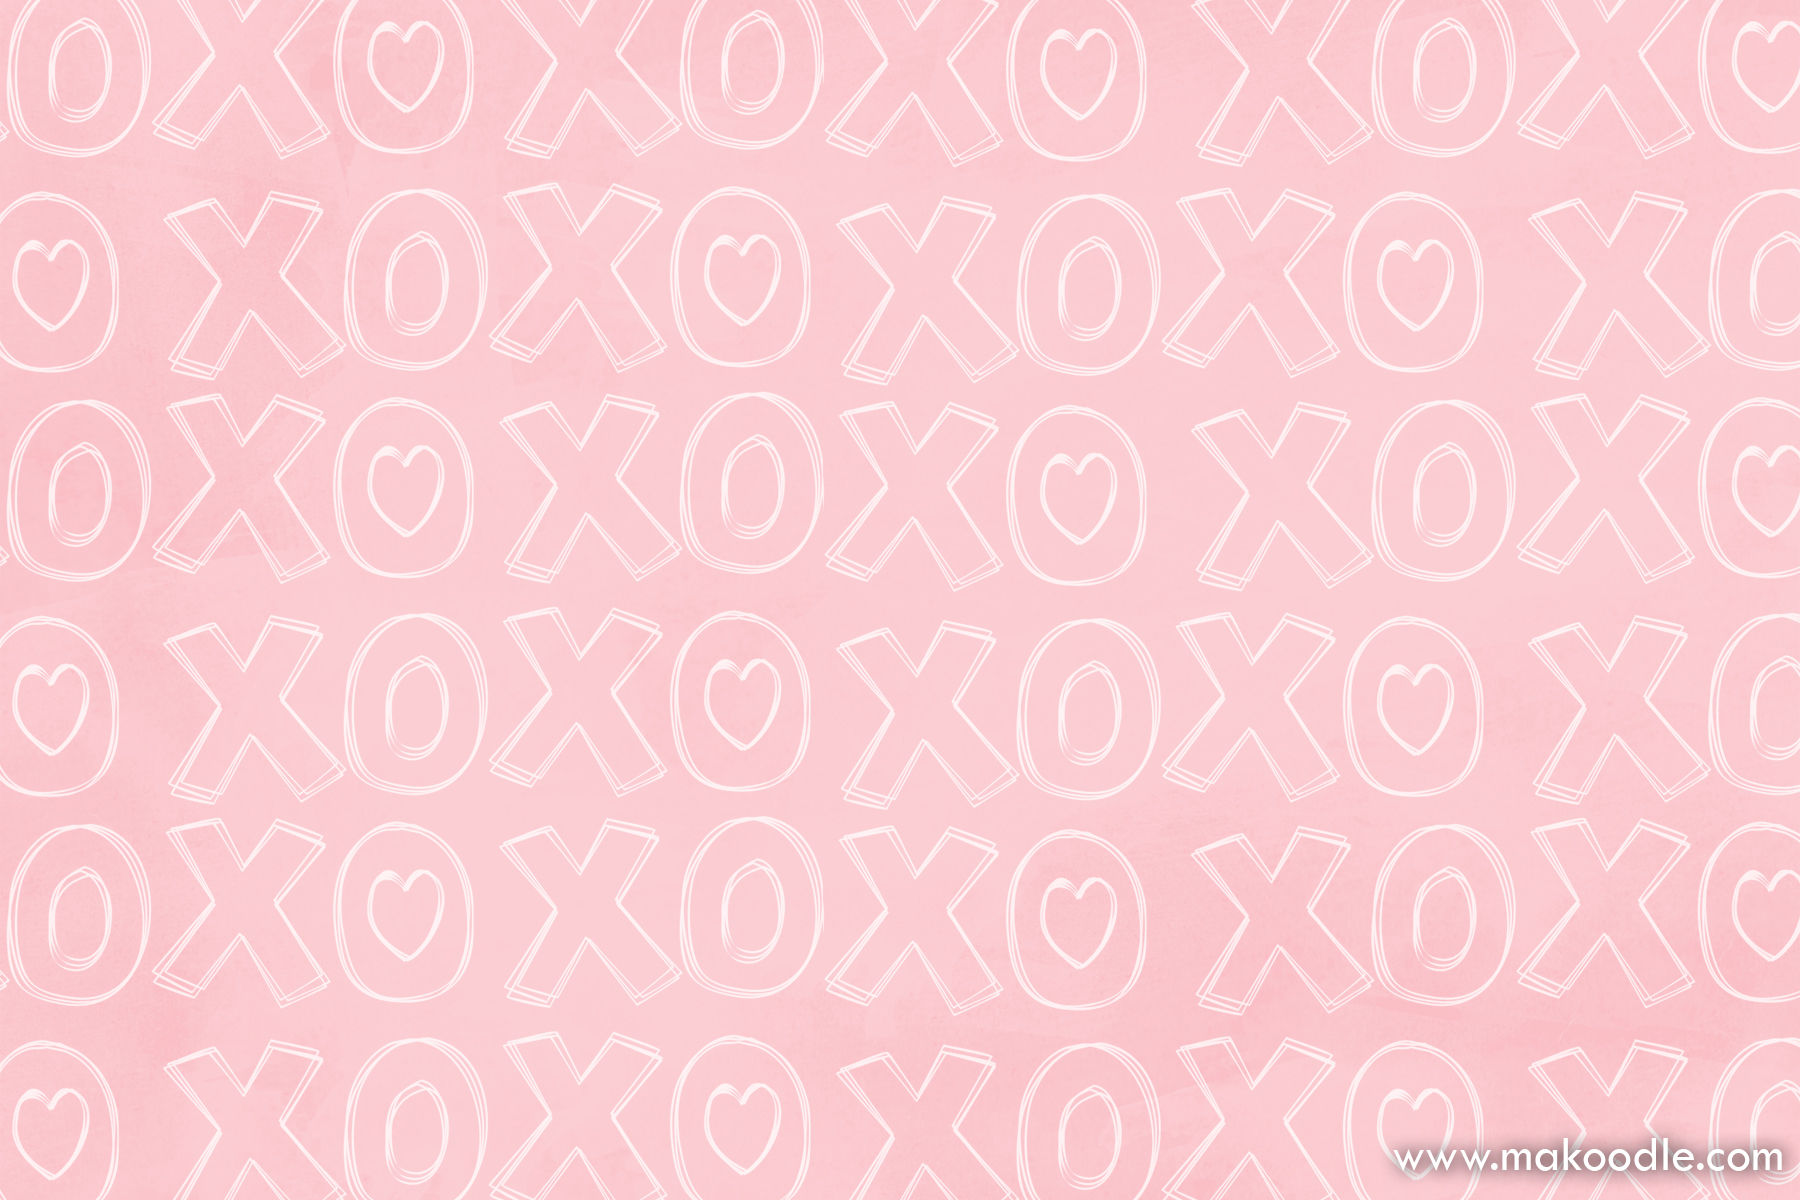 Xoxo Love Printable Dimensional Valentine S Day Print